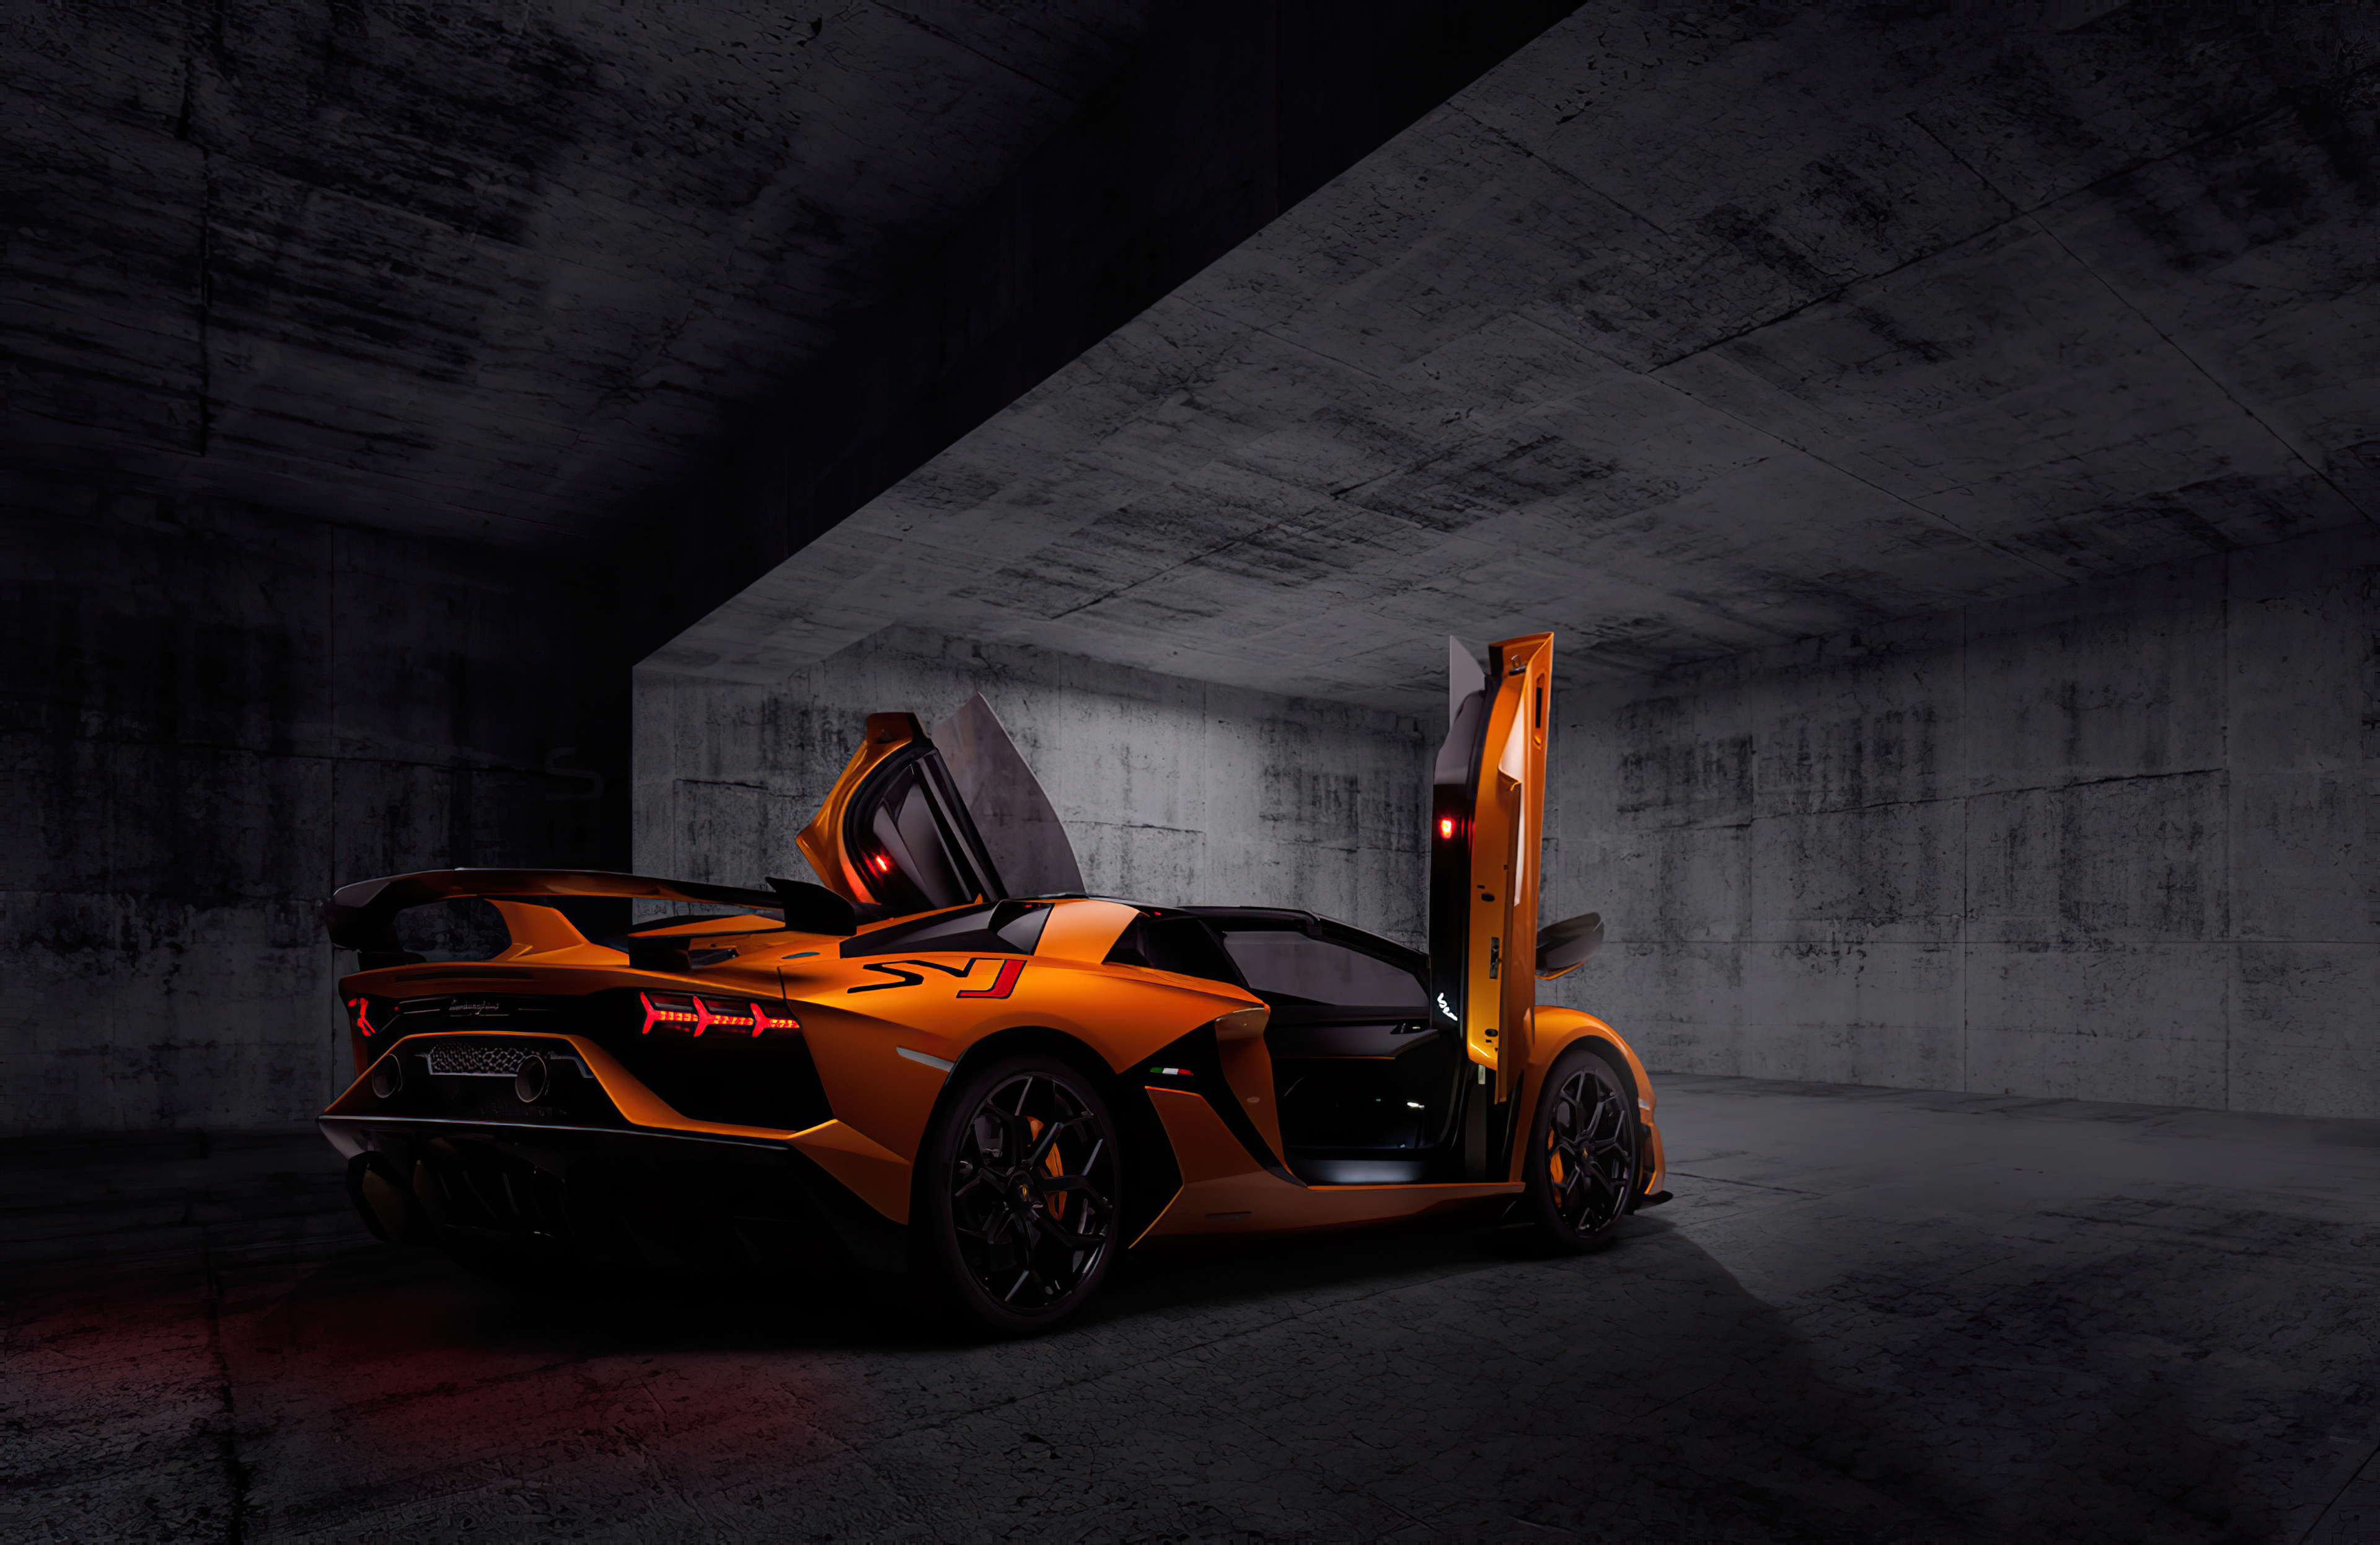 Orange Lamborghini Aventardor SVJ 4k, HD Cars, 4k Wallpapers, Images